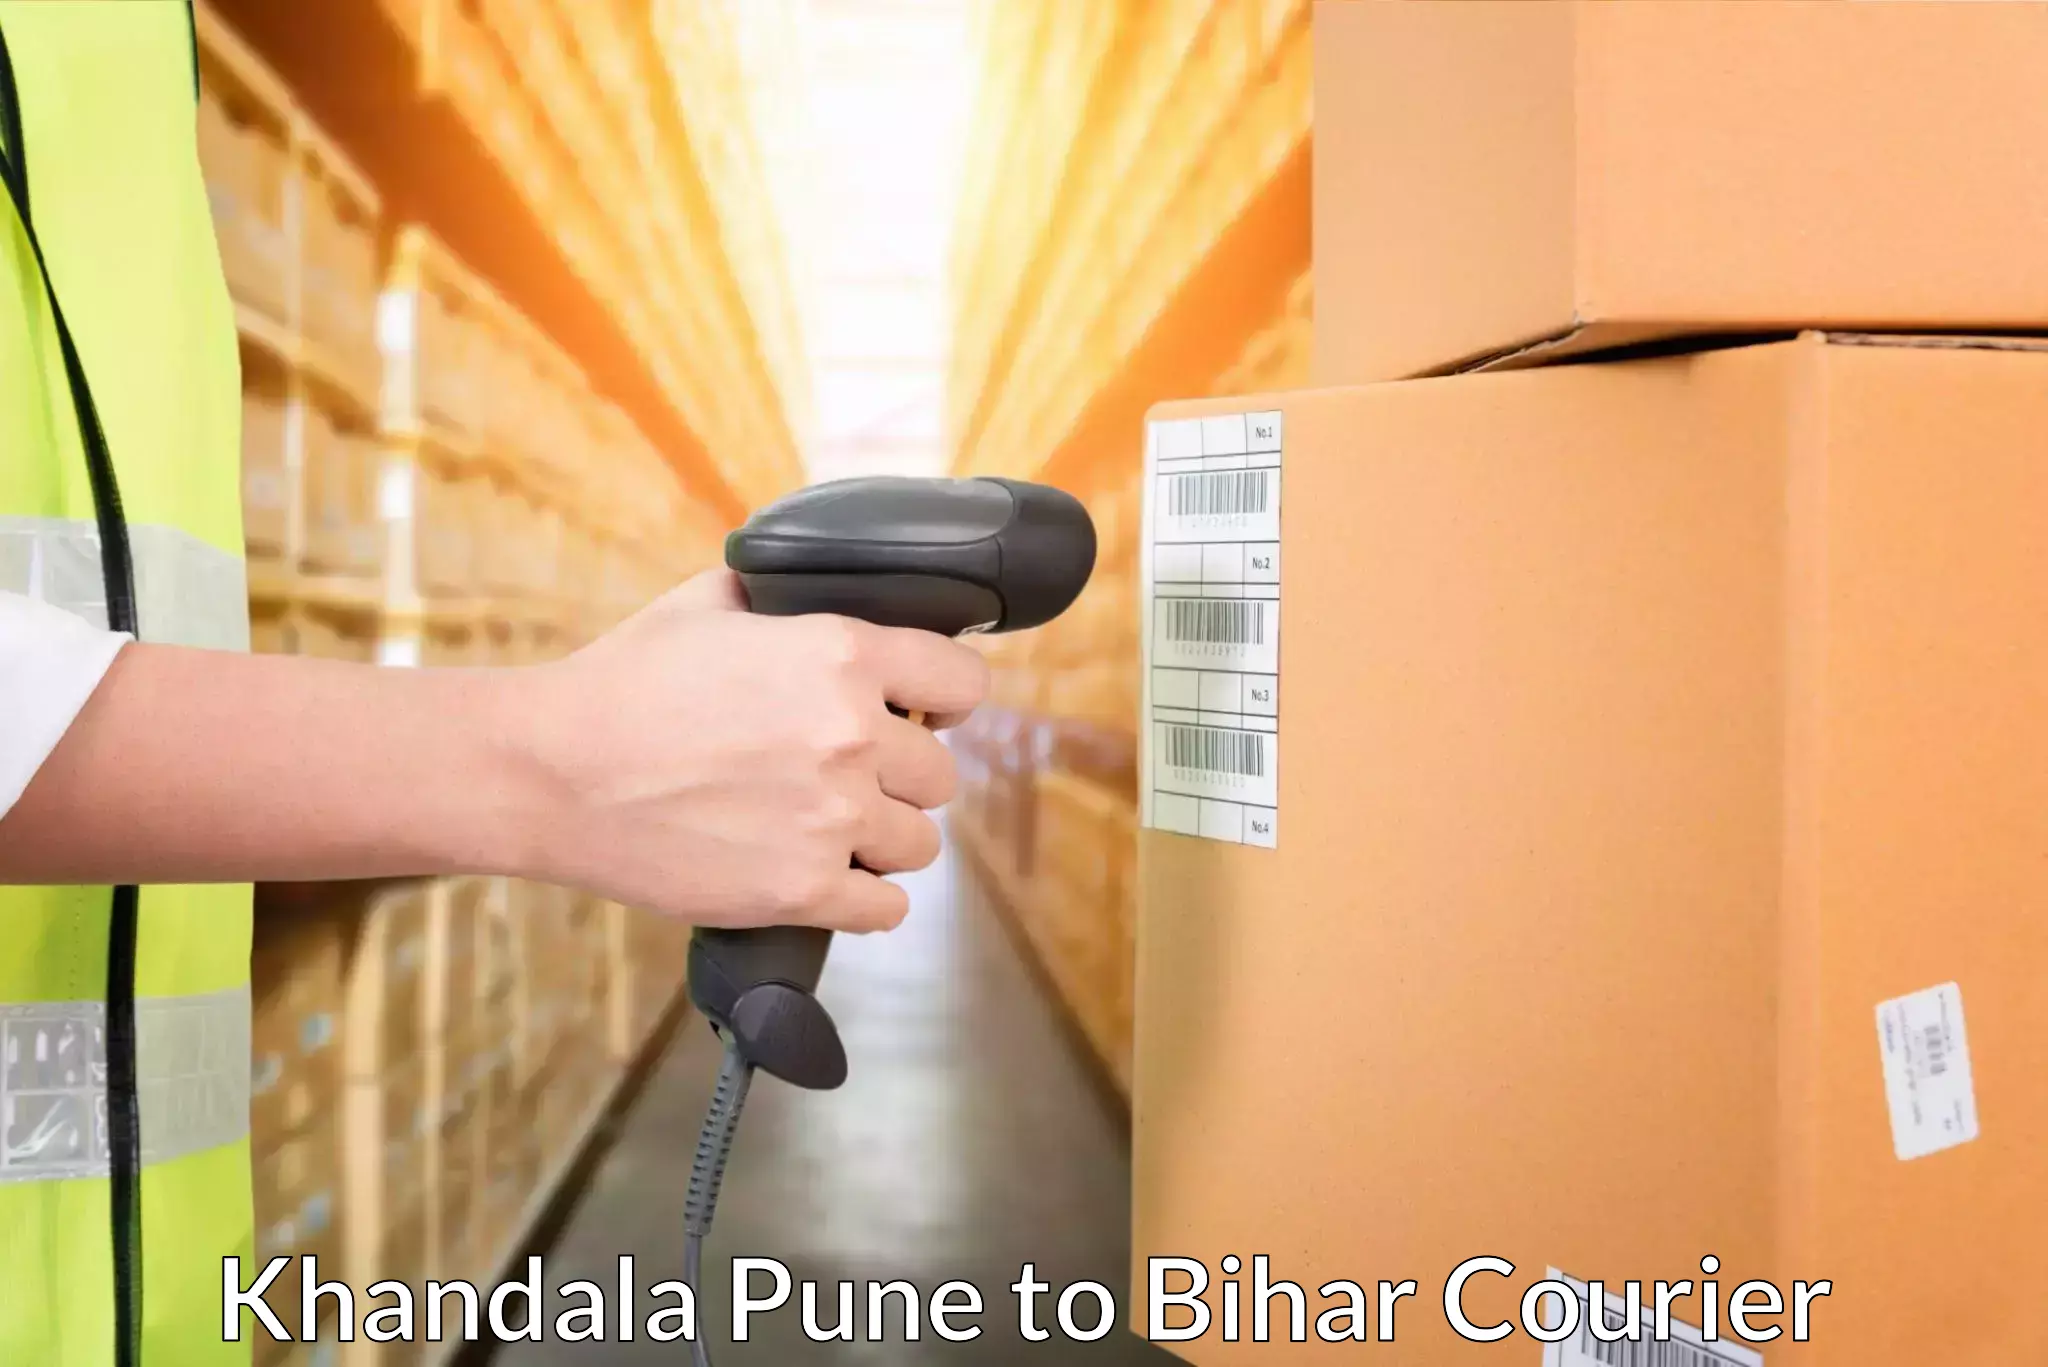 On-demand shipping options Khandala Pune to Bhorey